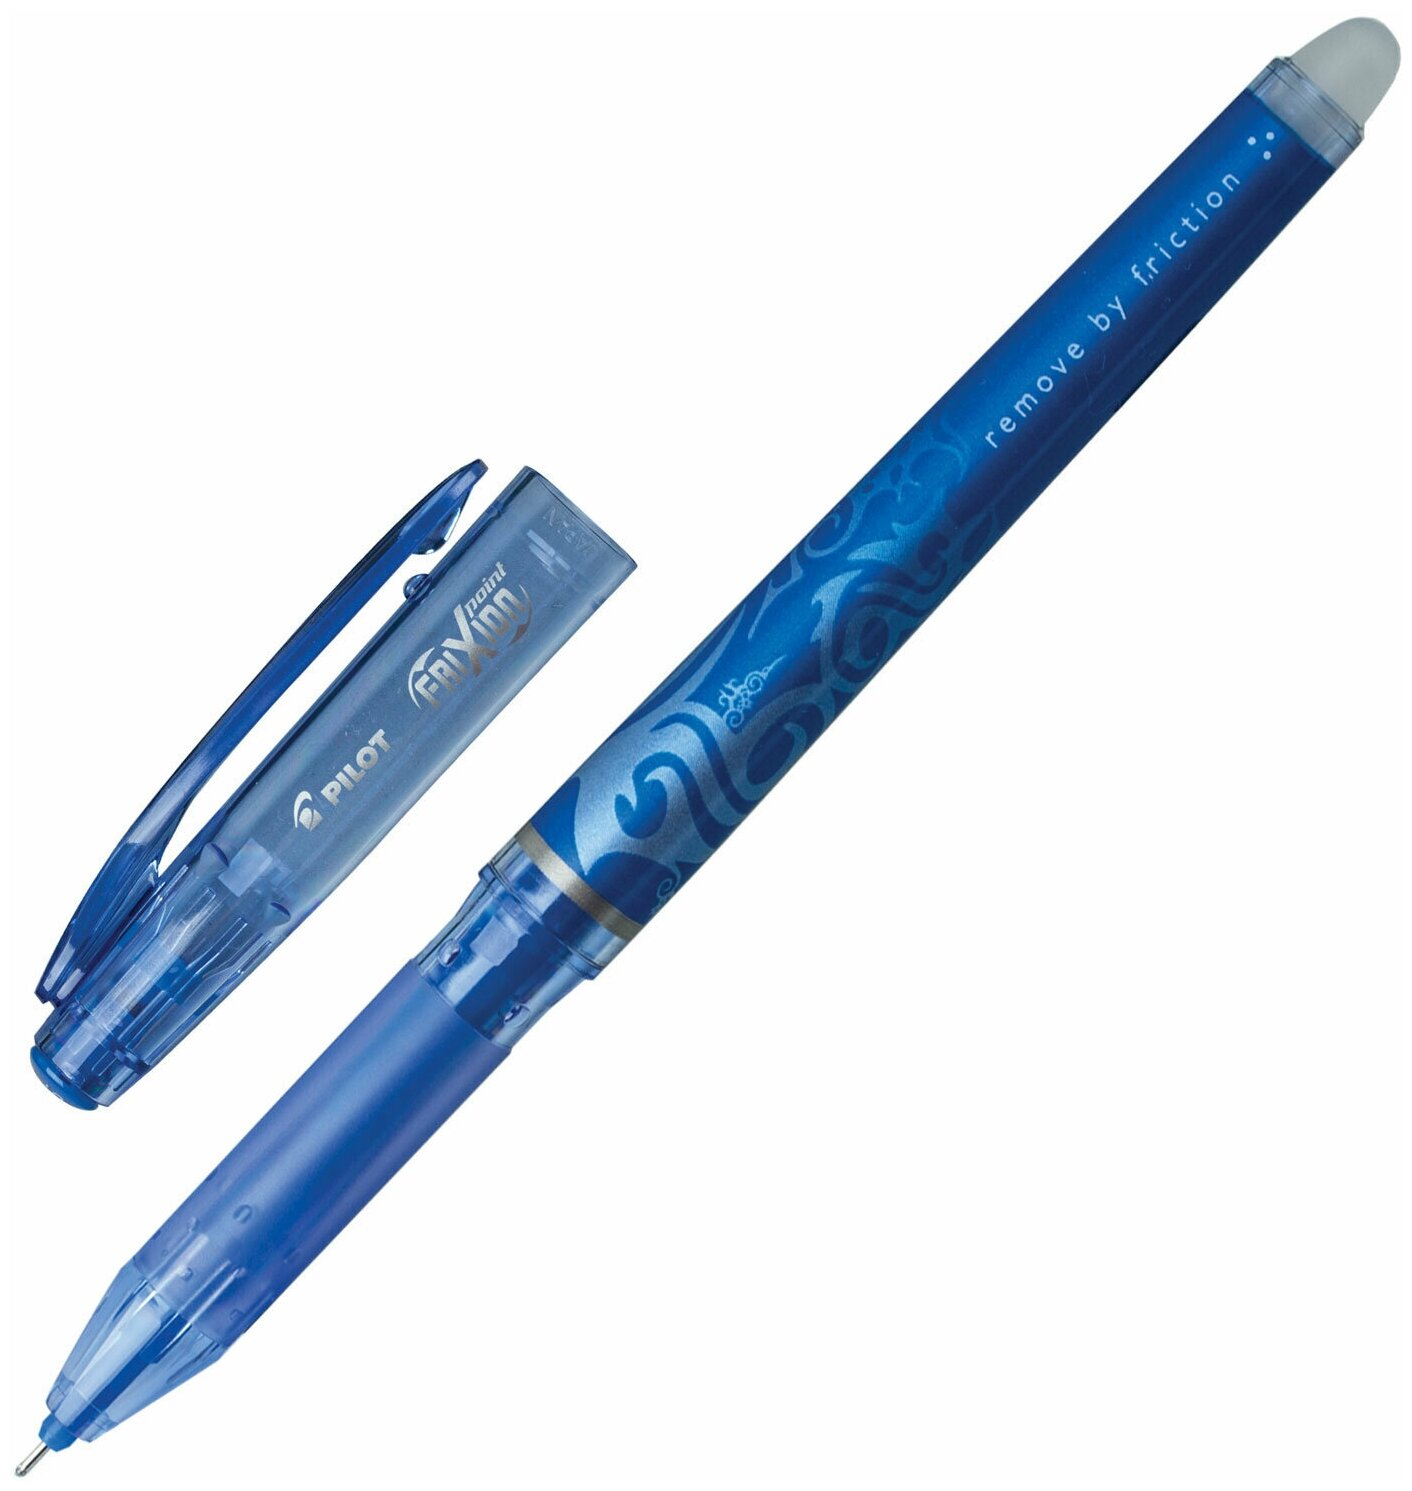 Ручка стираемая гелевая (пиши-стирай) с грипом Pilot Frixion Point, Синяя, Комплект 2 Штуки, линия 0,25 мм, 880581